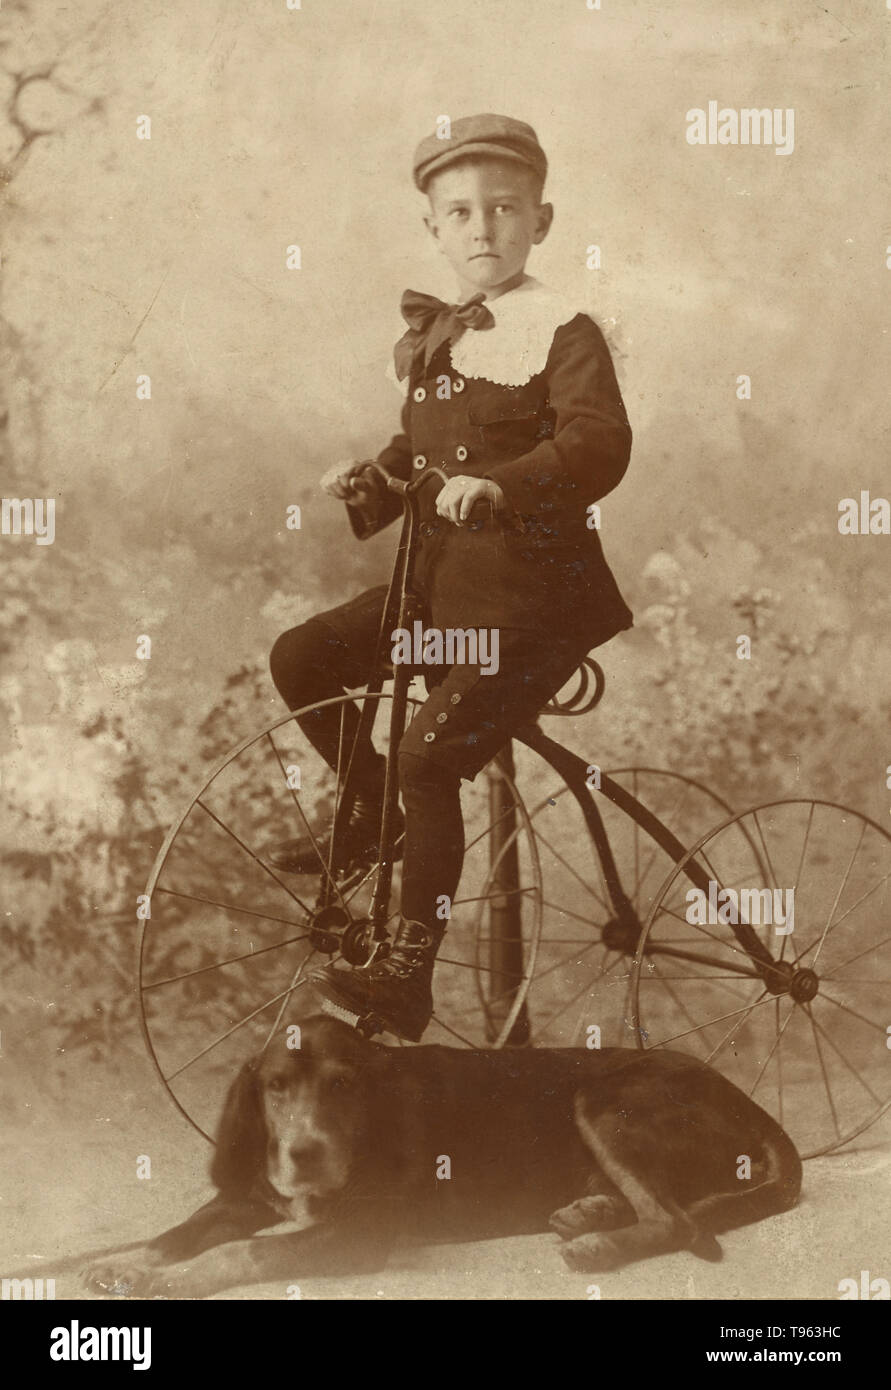 Junge trägt eine Kappe, montiert auf einem alten Stil dreirädrigen Fahrrad, mit einem Hund im Vordergrund, 1890. Von Henry Davis, Amerikanische genommen. Stockfoto